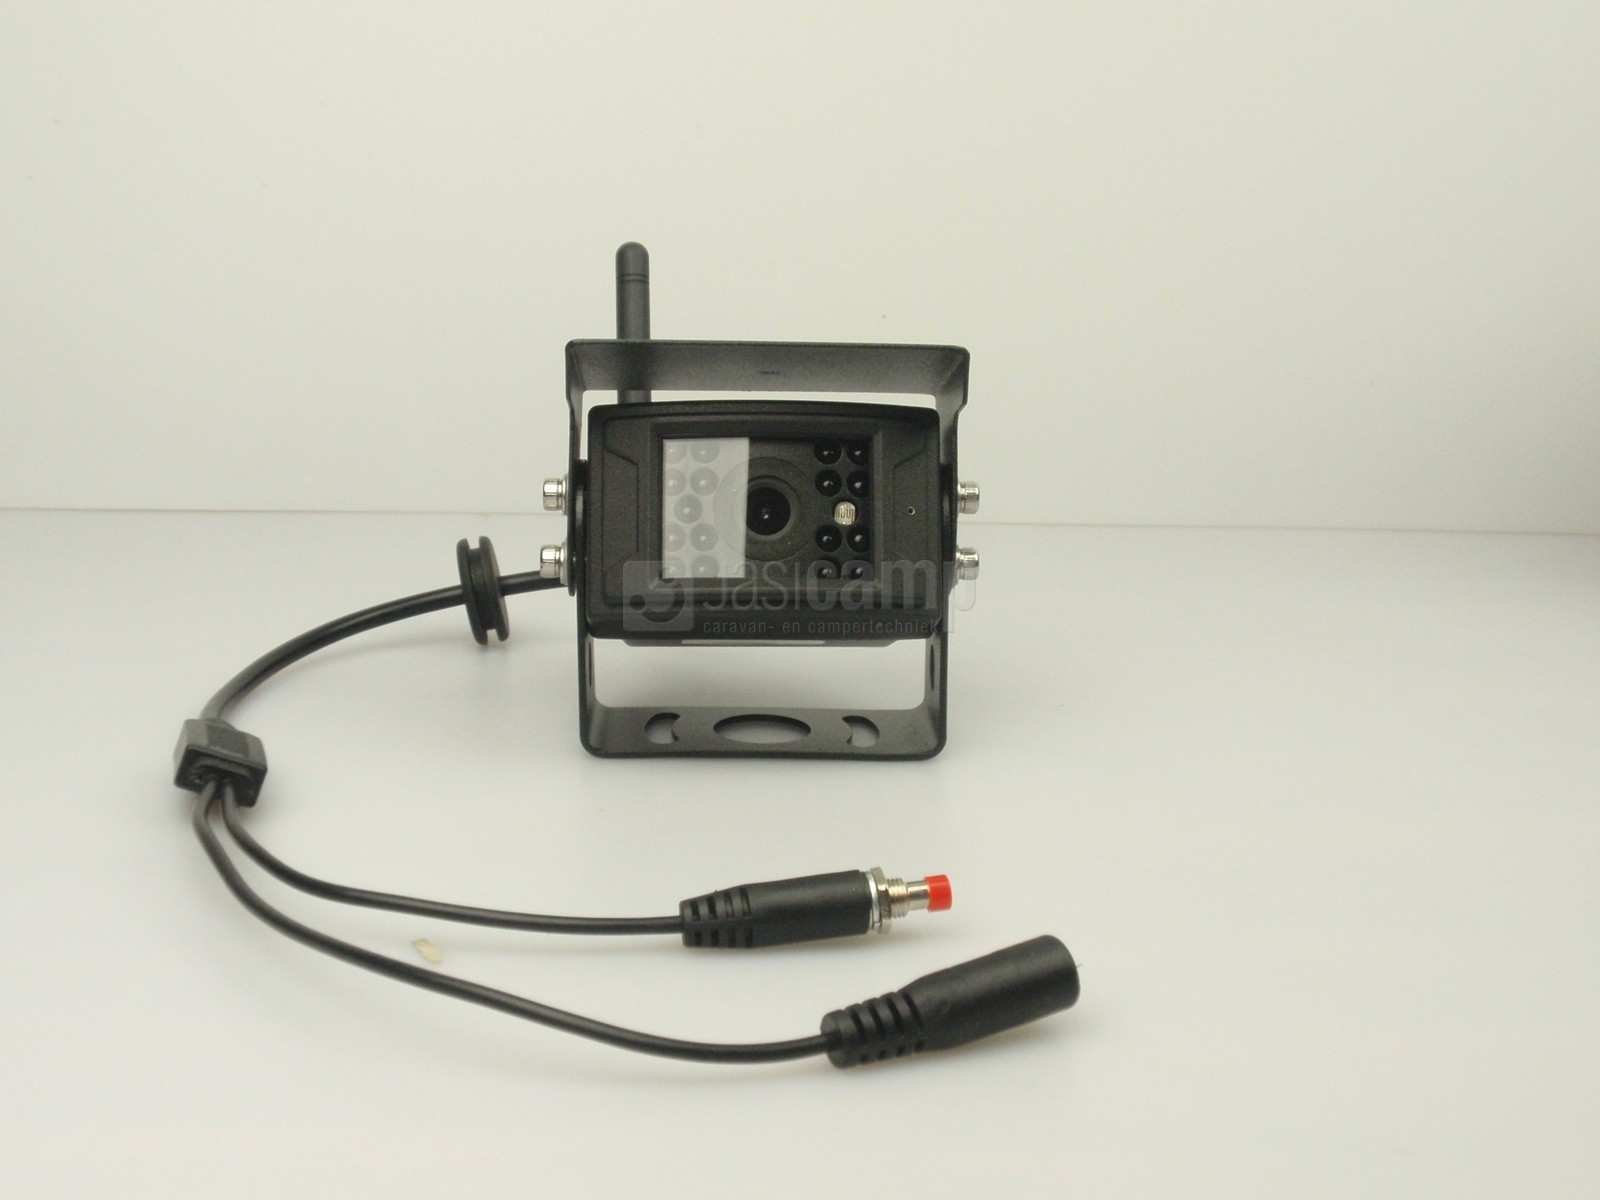 JCP-line camera systeem draadloos S400, 7 monitor, zonnekap, draadloze kleuren camera 120 m bereik, kabels, afstandsbediening.